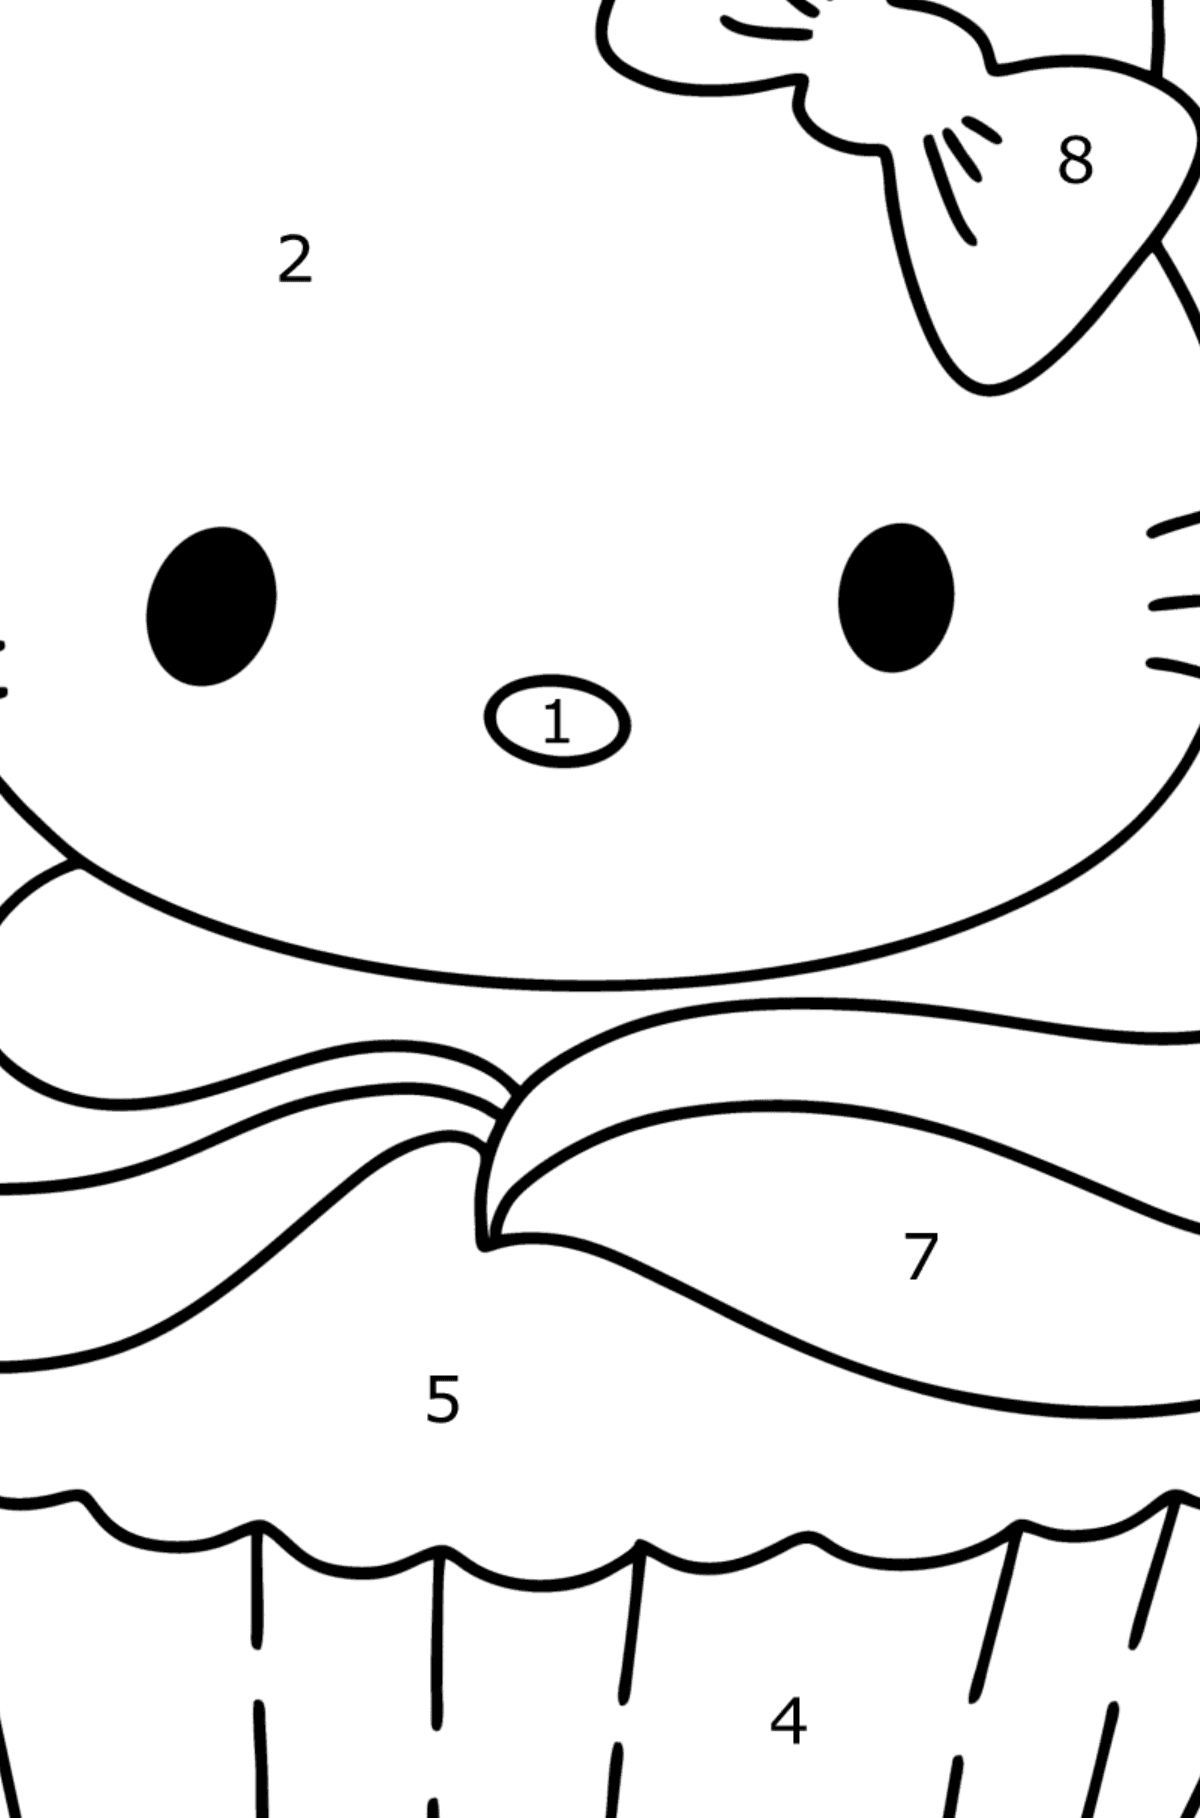 Boyama sayfası Hello Kitty bisküvi - Sayılarla Boyama çocuklar için